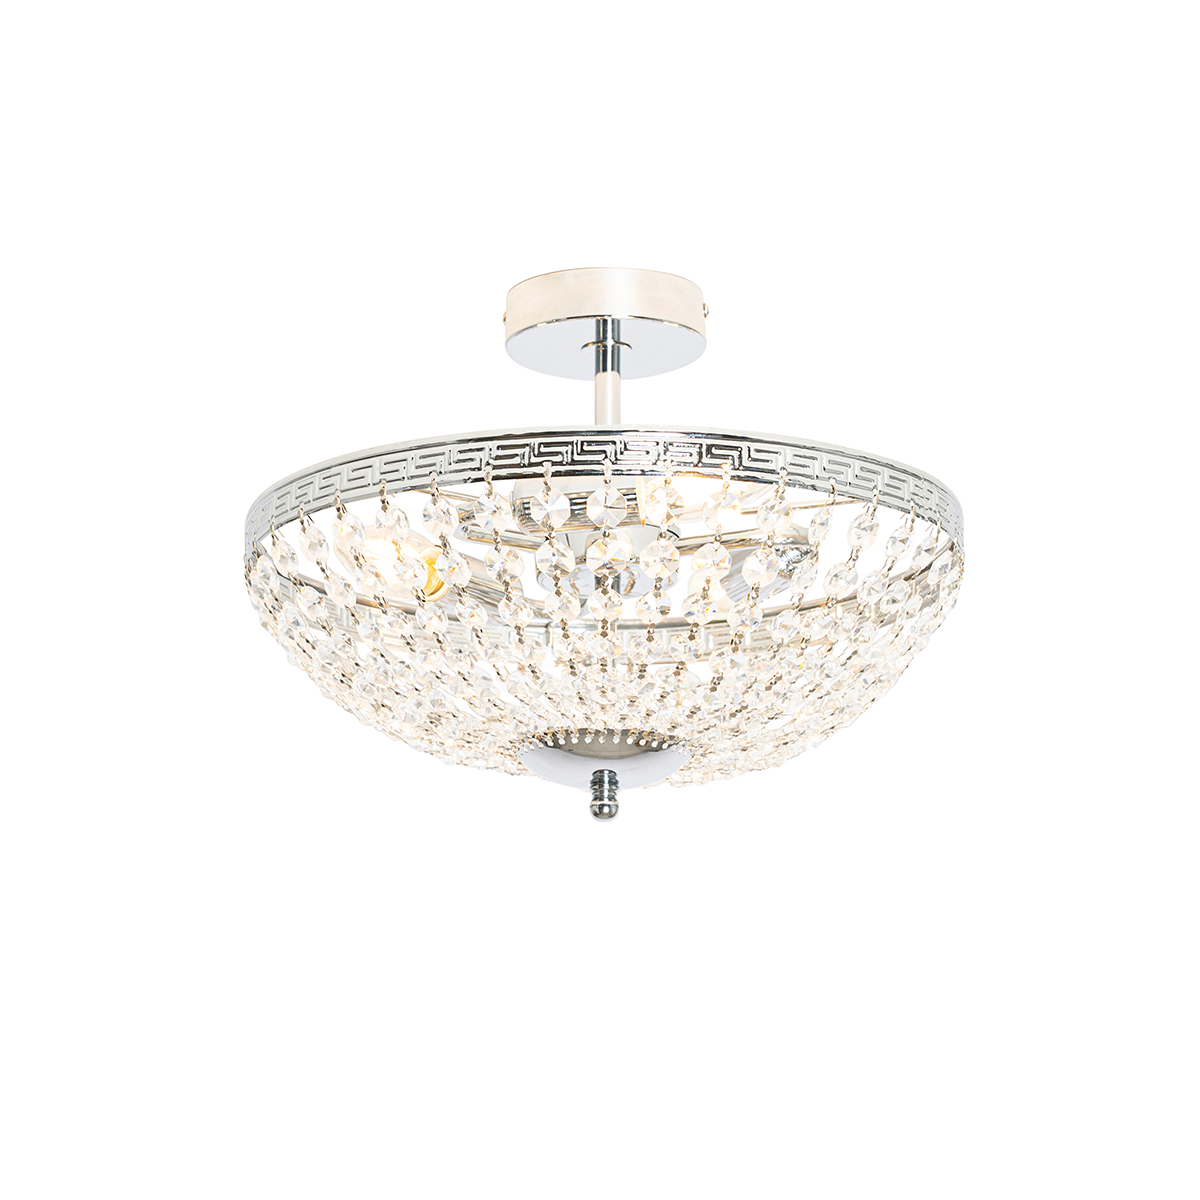 Klasszikus mennyezeti lámpa acél kristály 3 lámpával - Mondrian